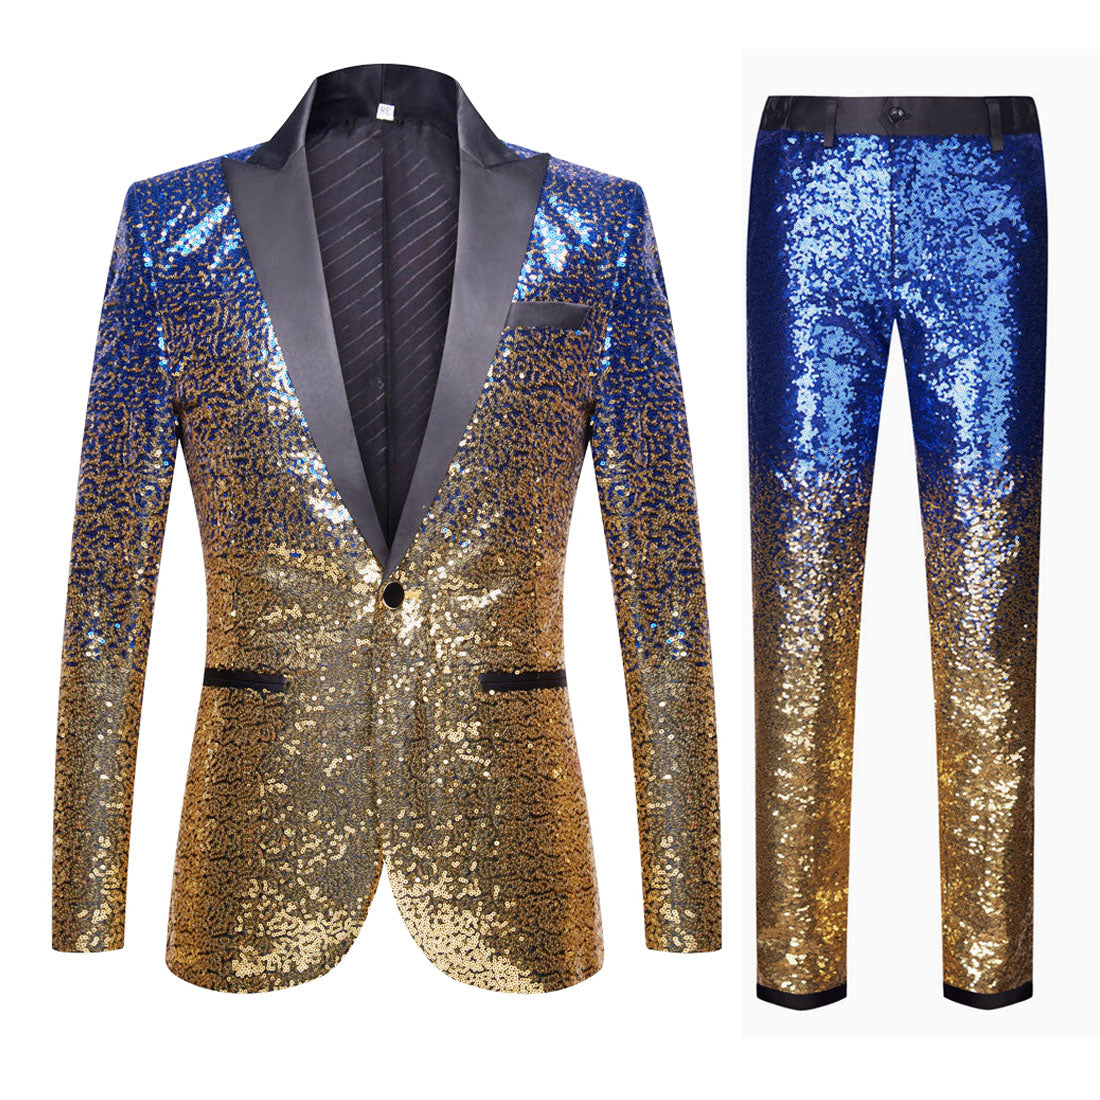 Multicolor Sequins Suit（8 Colors）S8051-2